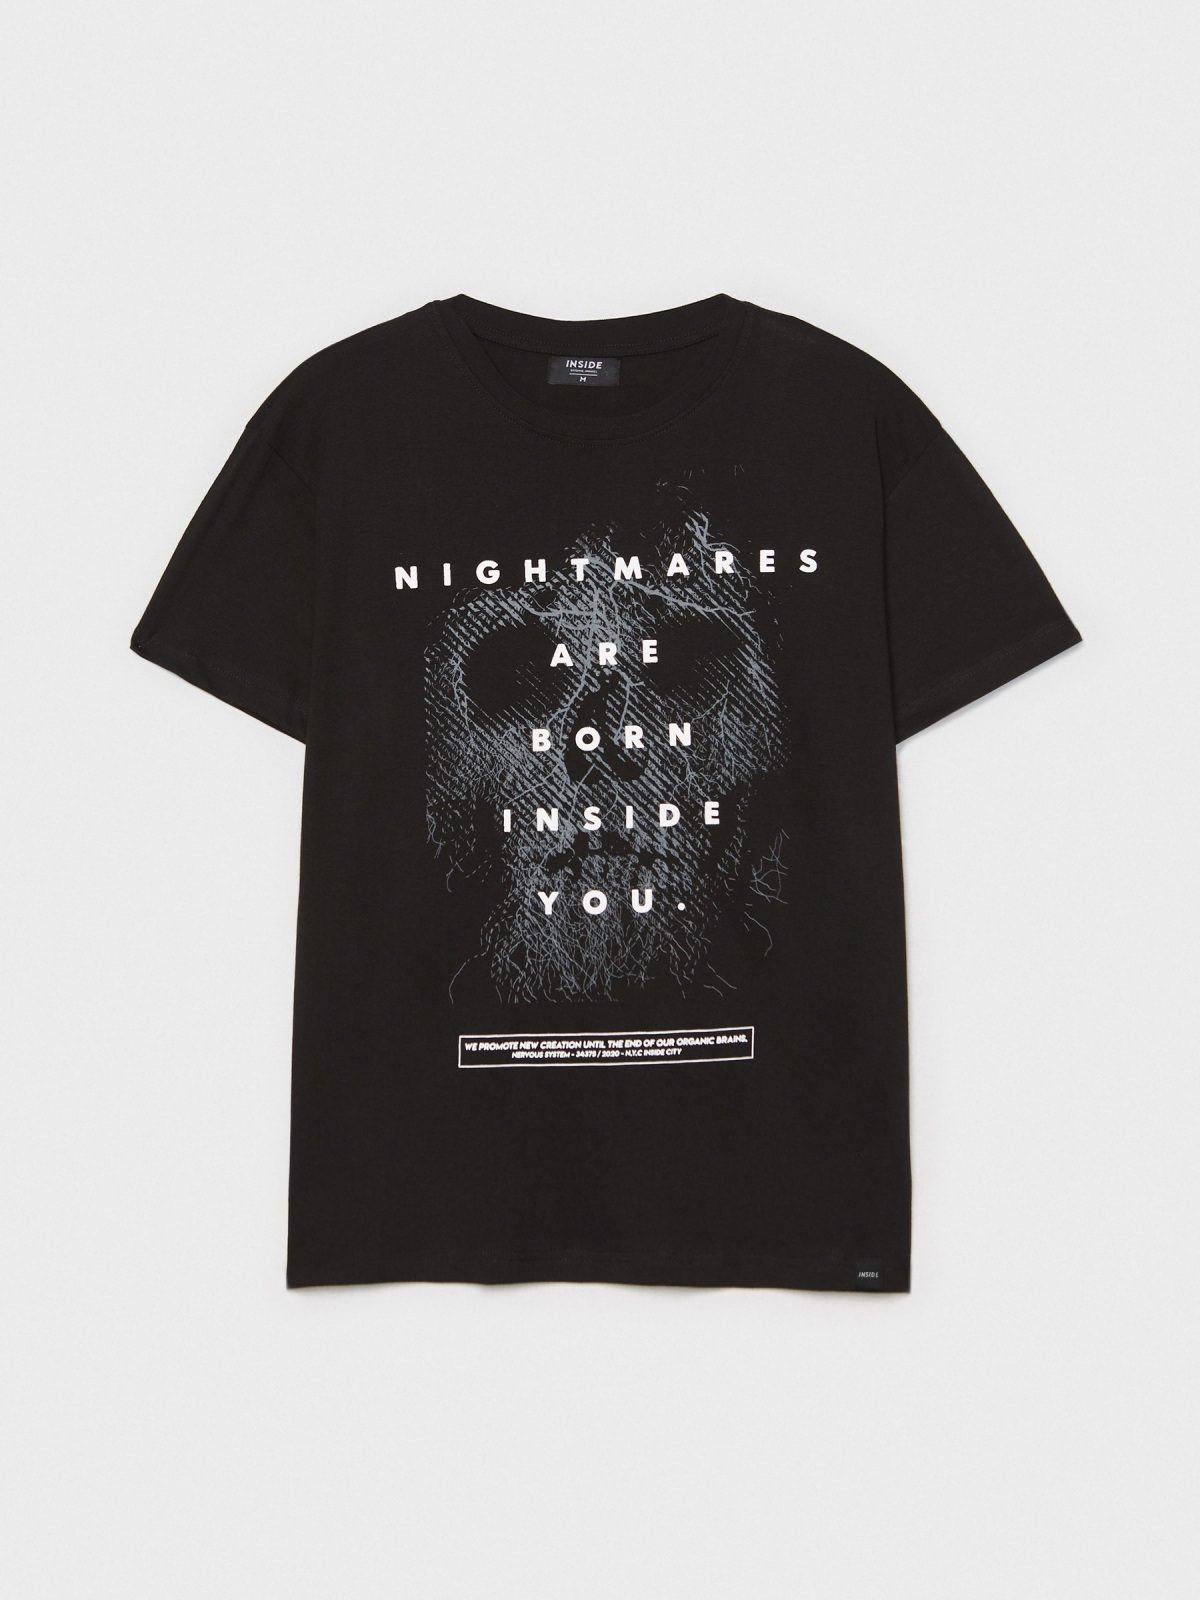  T-shirt com texto contrastante preto